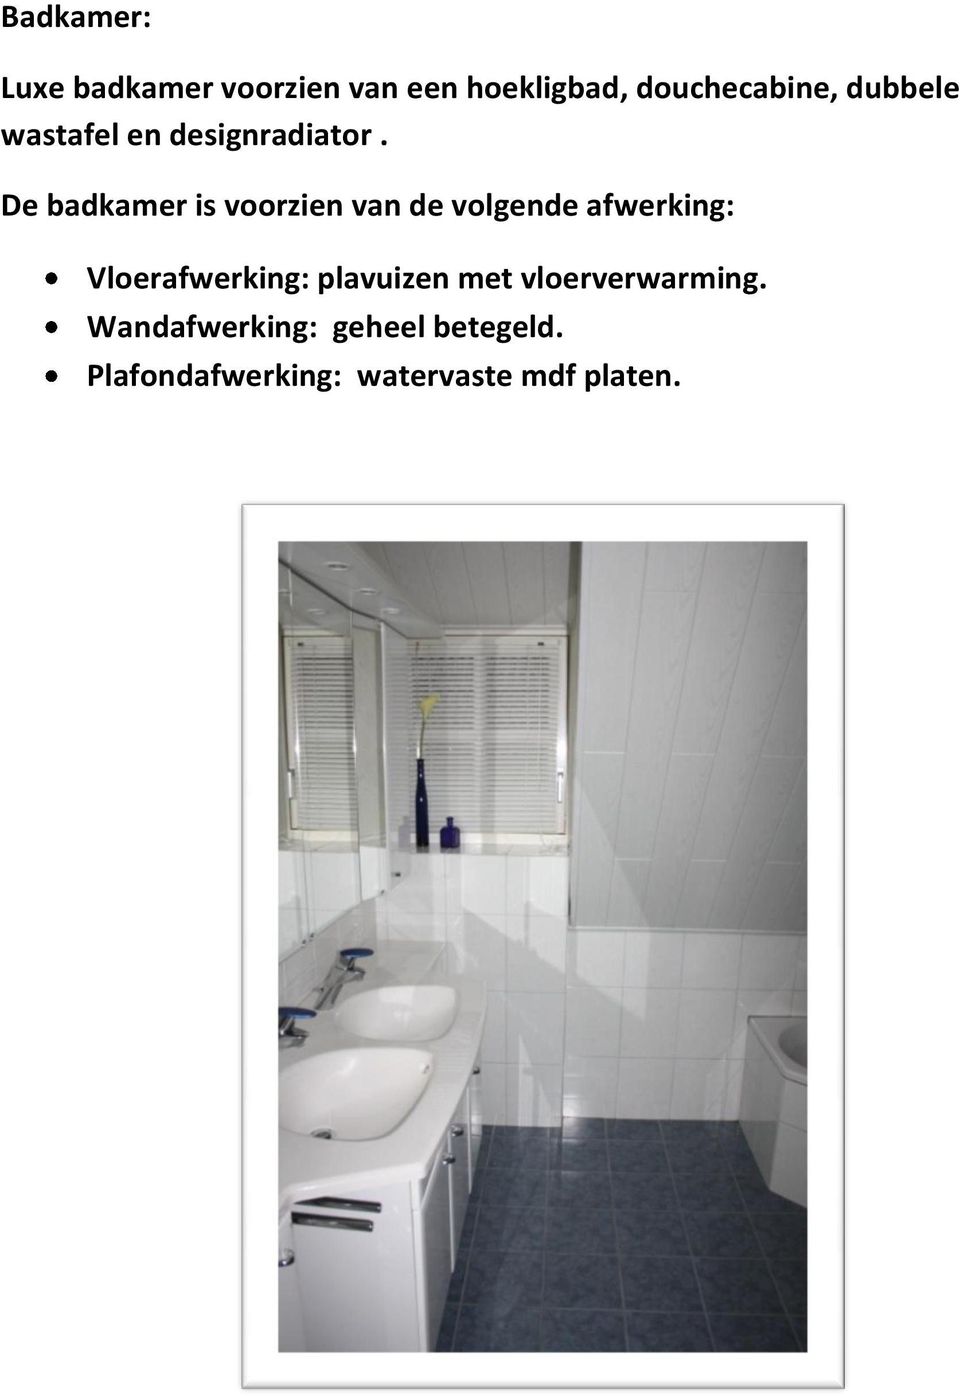 De badkamer is voorzien van de volgende afwerking: Vloerafwerking: